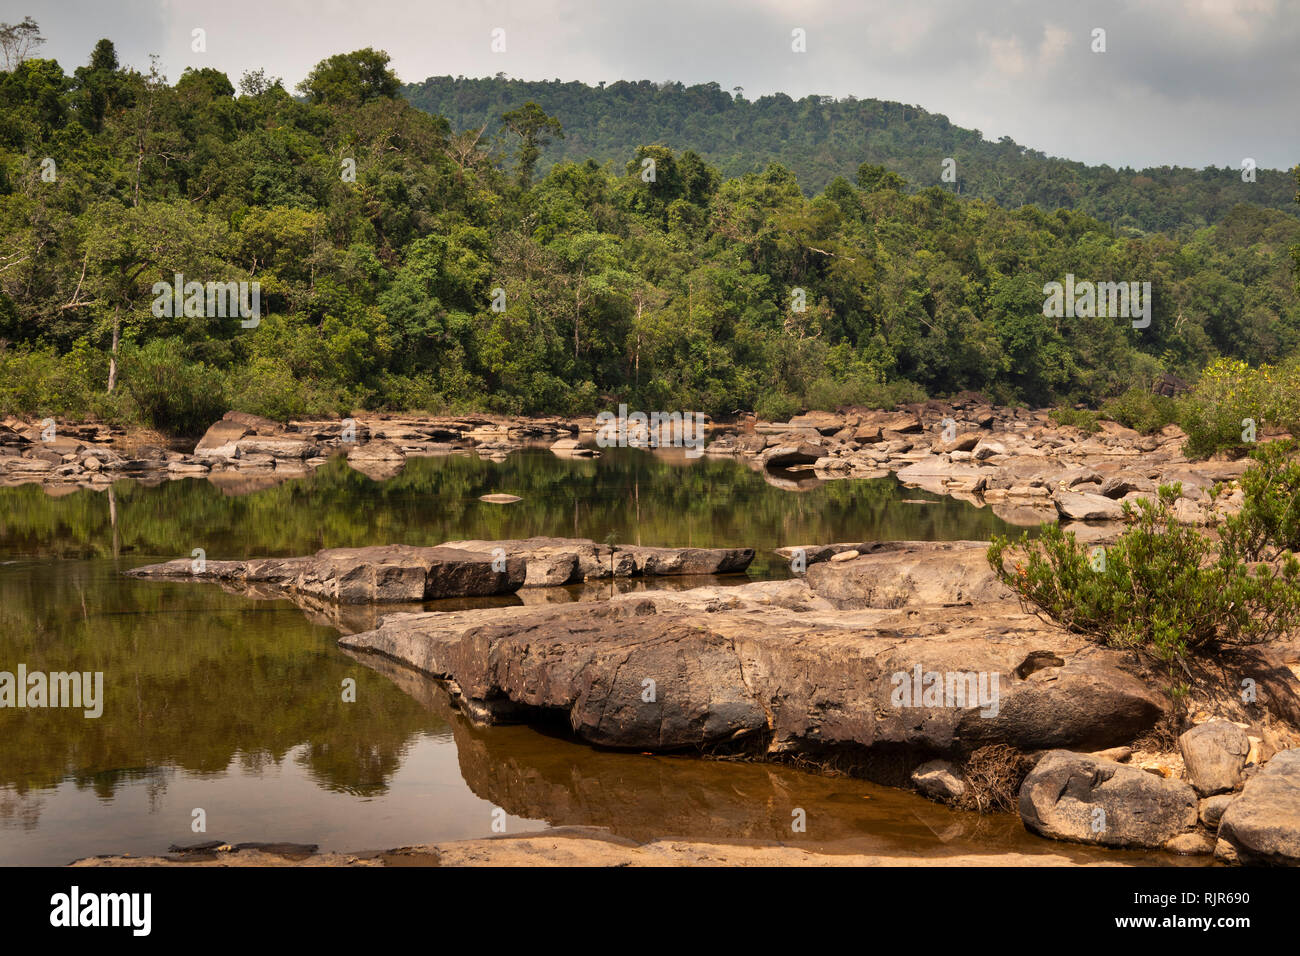 Cambogia, Koh Kong Provincia, Tatai, Cascata, riflessi in acqua calma sopra scende nella stagione secca Foto Stock